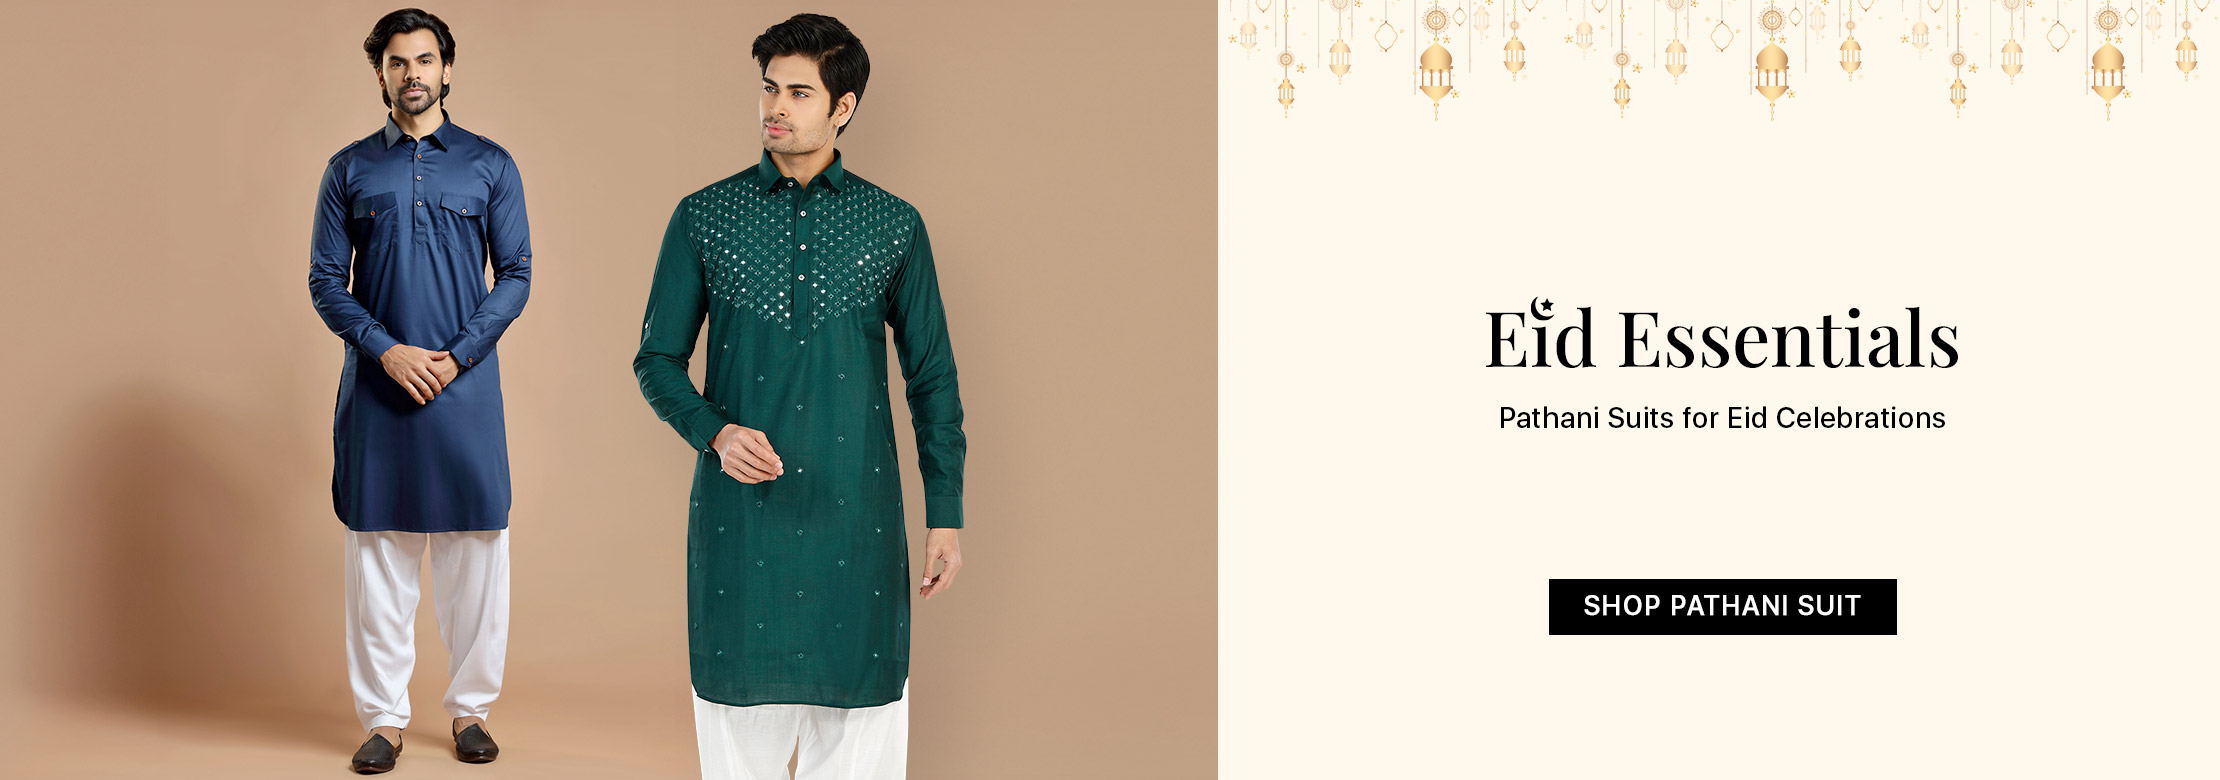 Men's Eid Pathani Suit